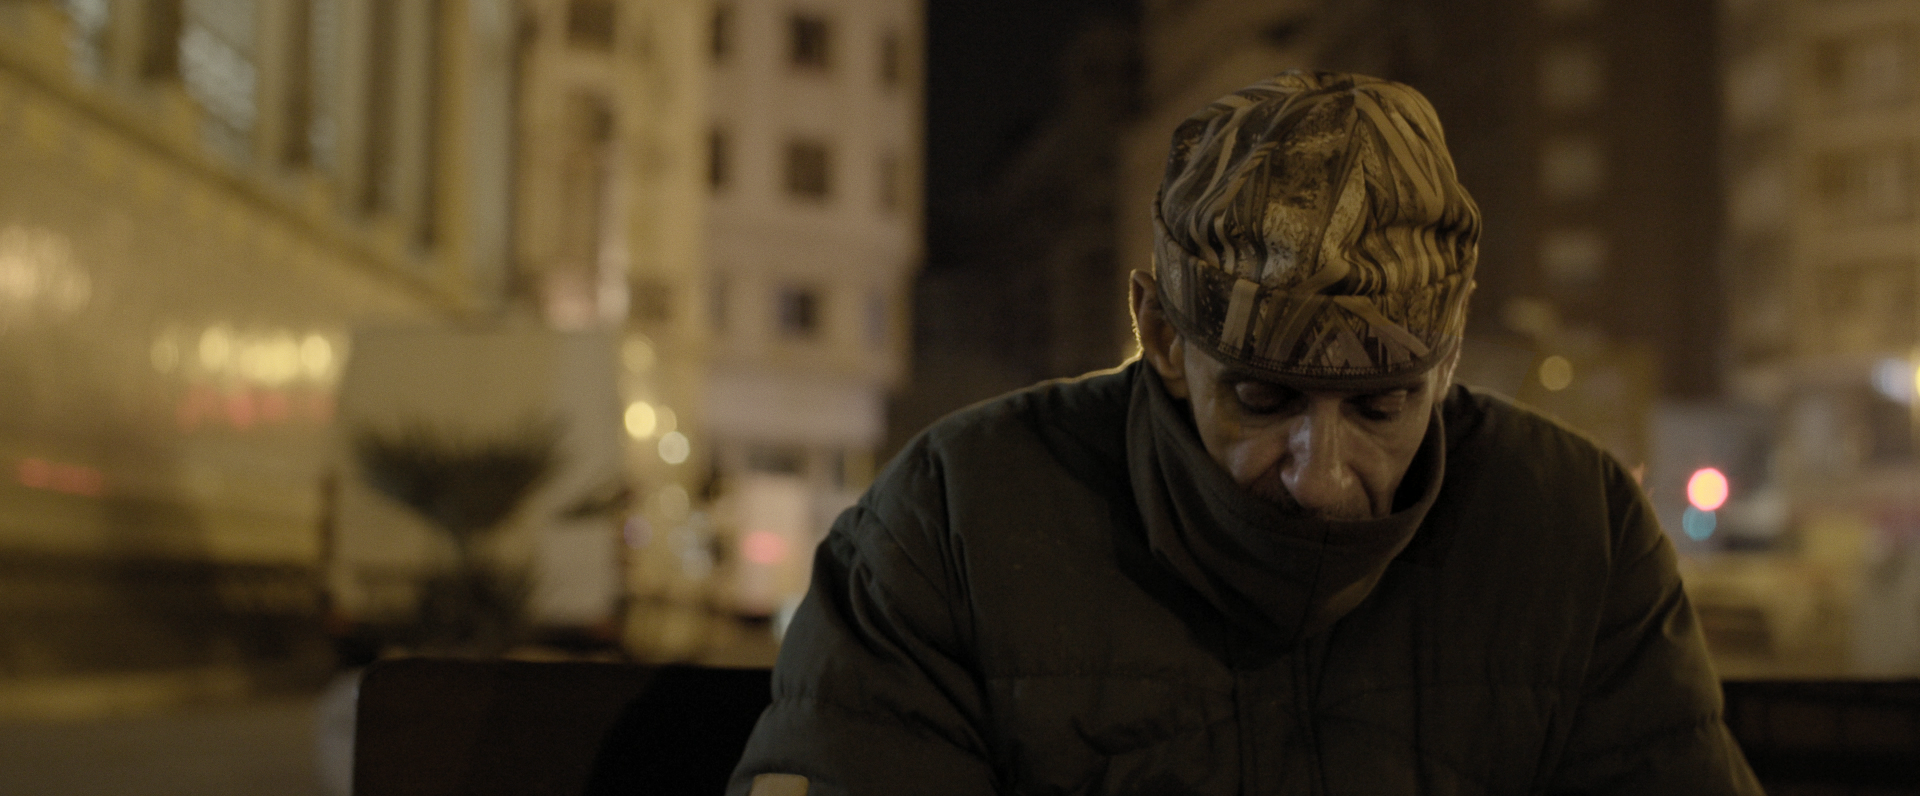 CINE CON Ñ ¿Cómo ayudar a las personas sin hogar? Un documental expone los límites del sistema.